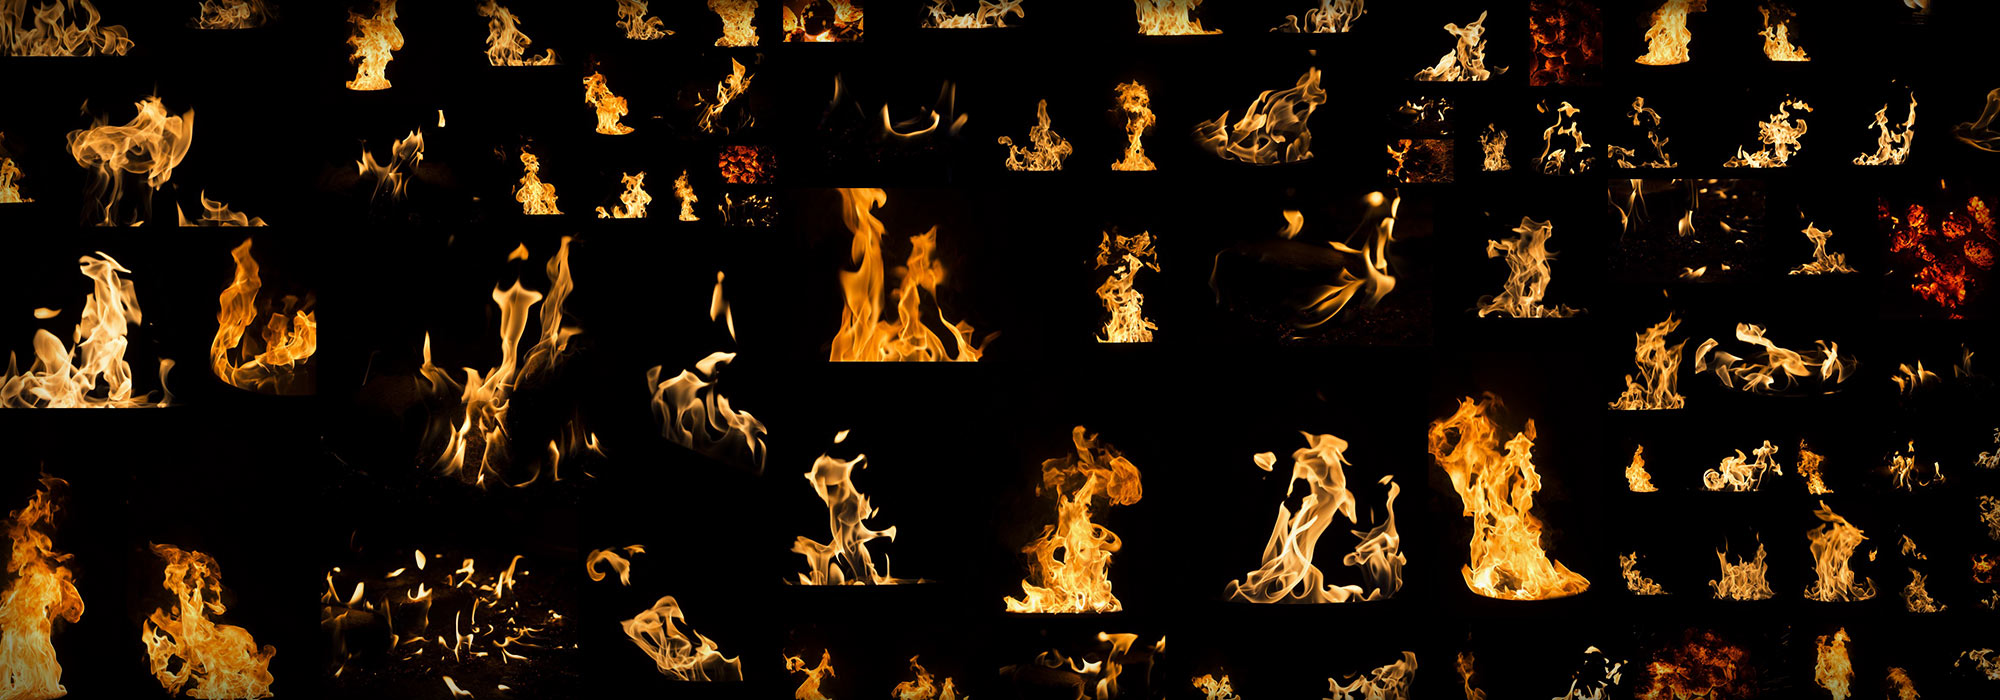 600+张在黑暗背景下超高清火焰装饰元素素材合辑 PHOTO